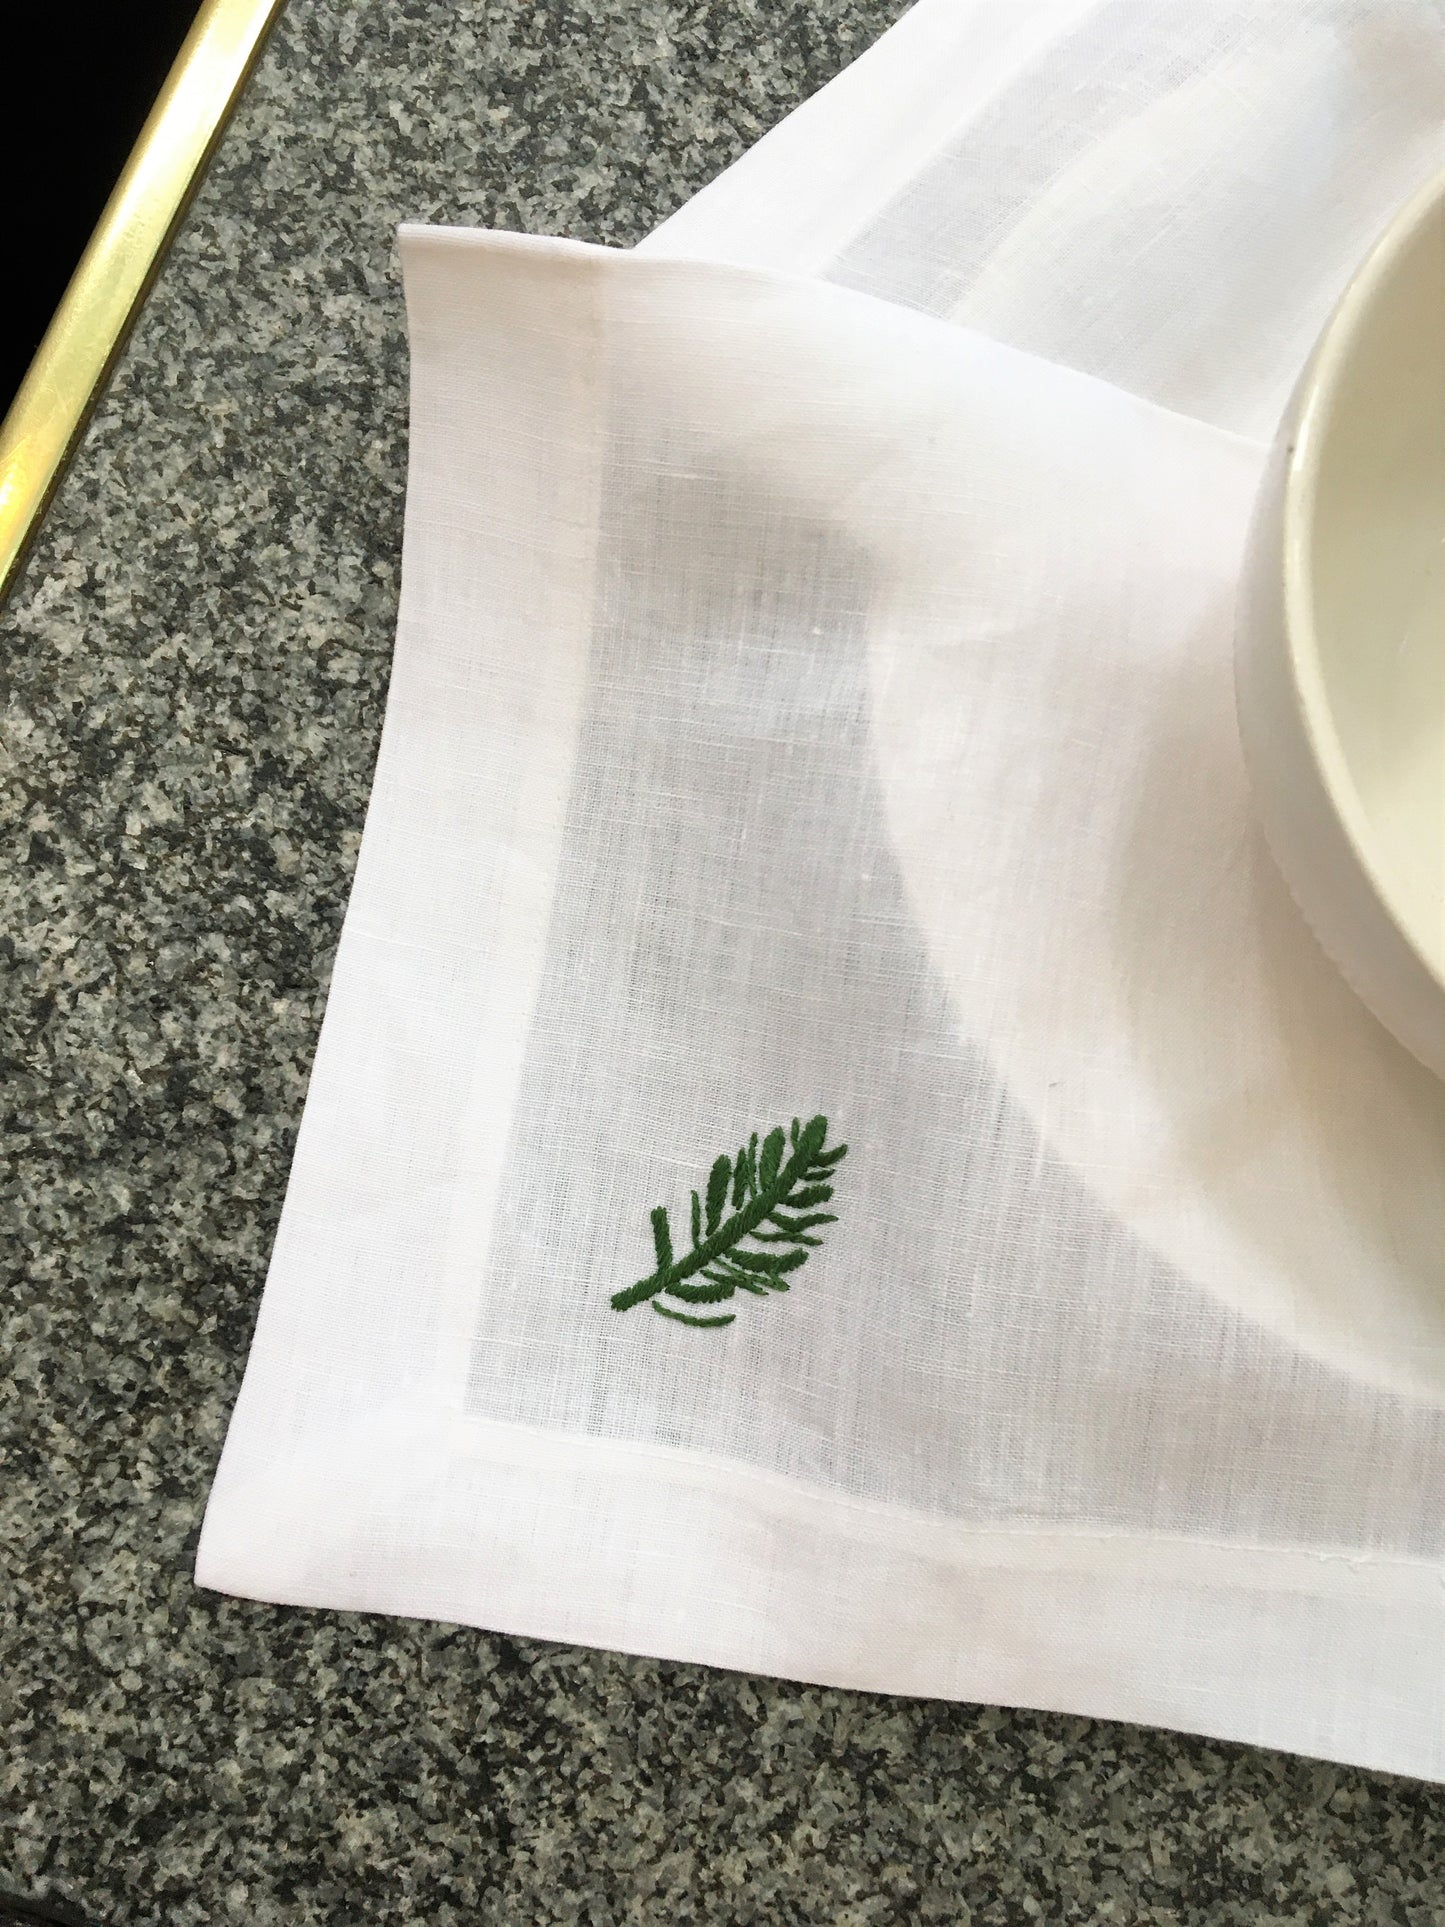 Leinenserviette auf gedecktem Tisch mit Motiv Eibe grüner Zweig